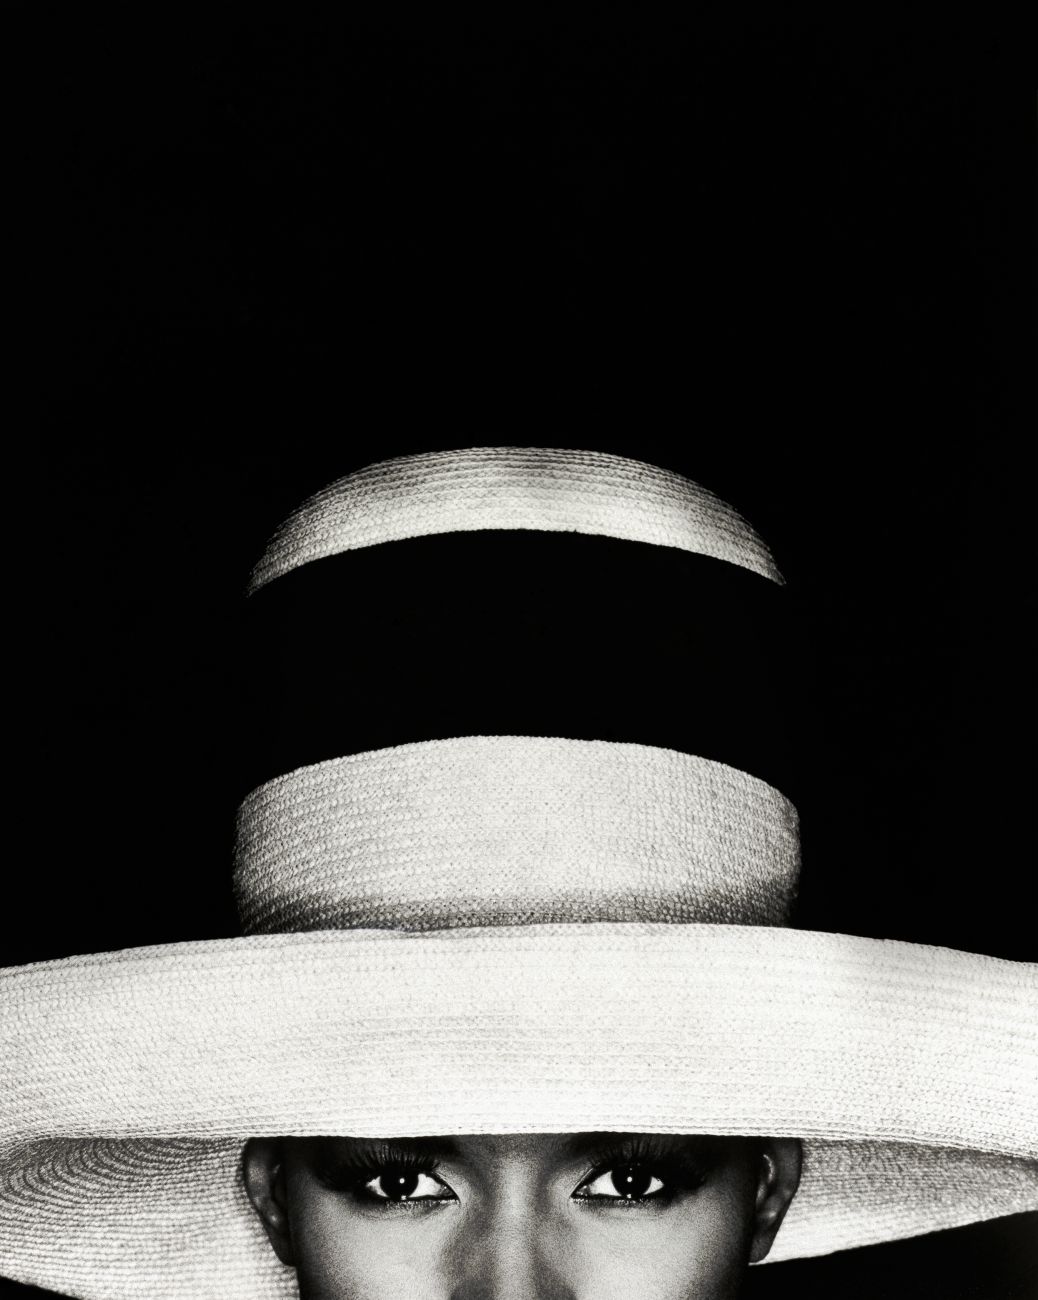 Greg Gorman, Grace Jones with hat, 1991 © Greg Gorman 